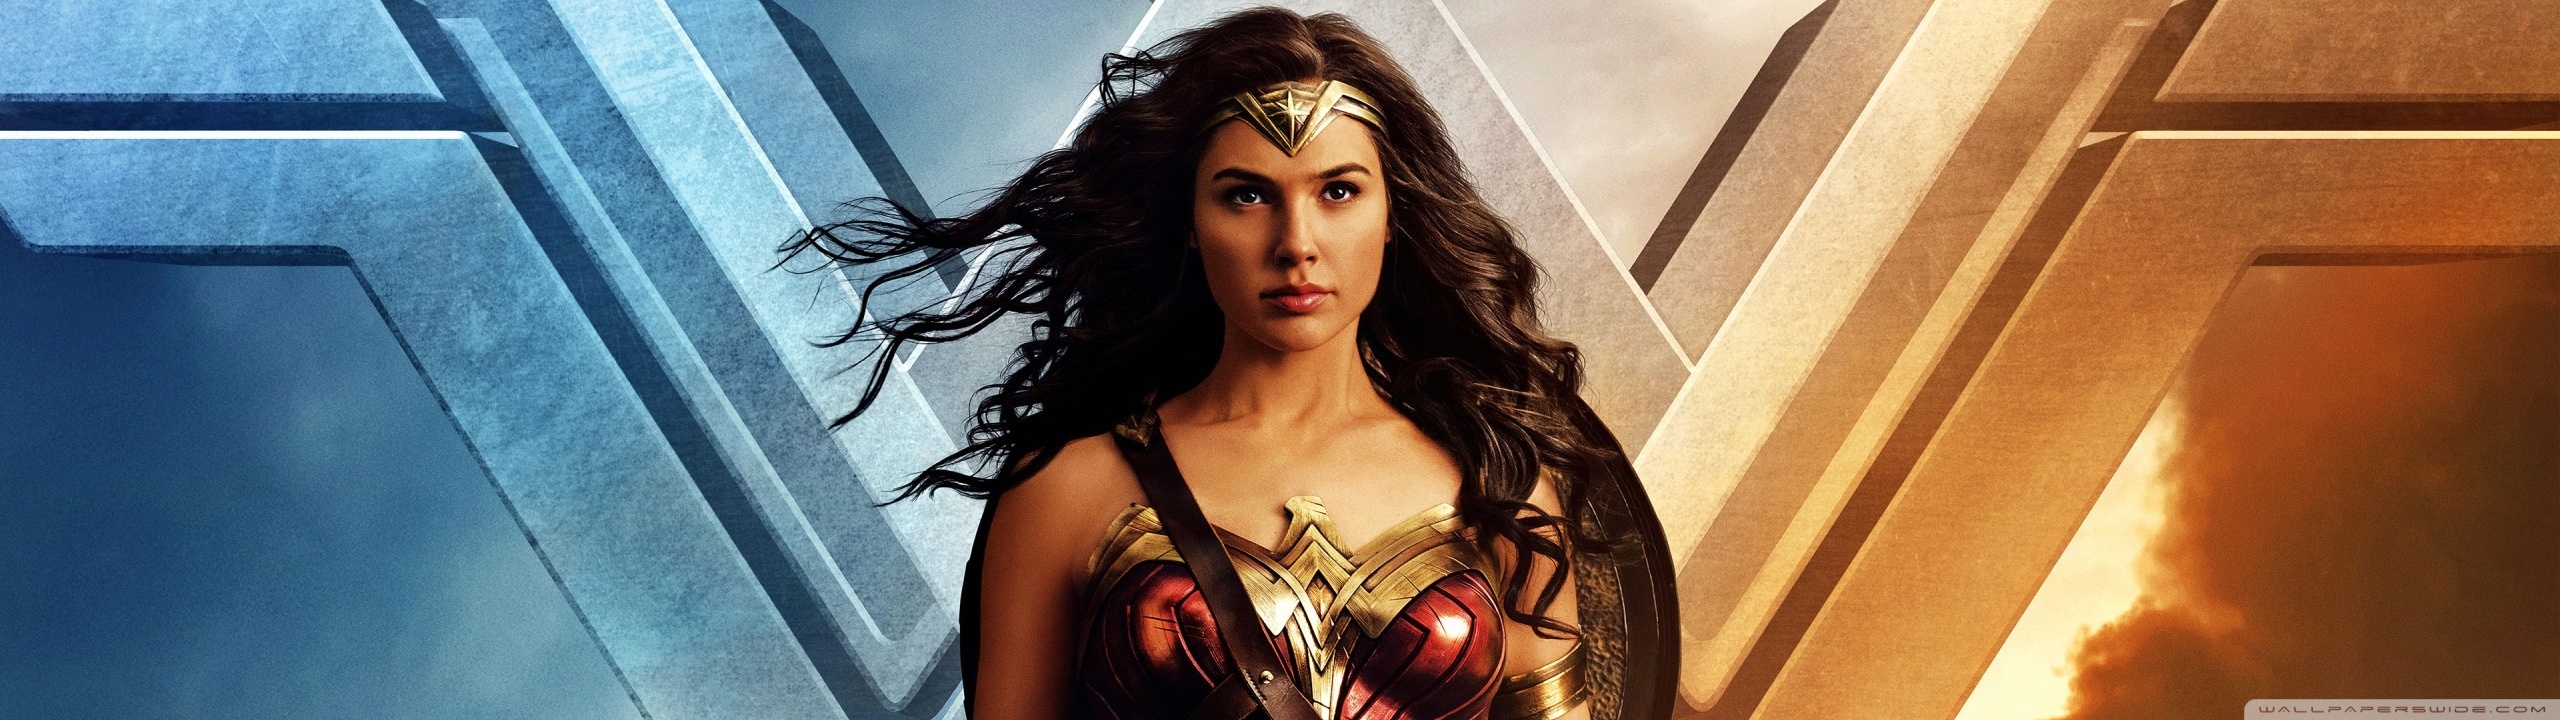 Wonder Woman Gal Gadot - HD Wallpaper 